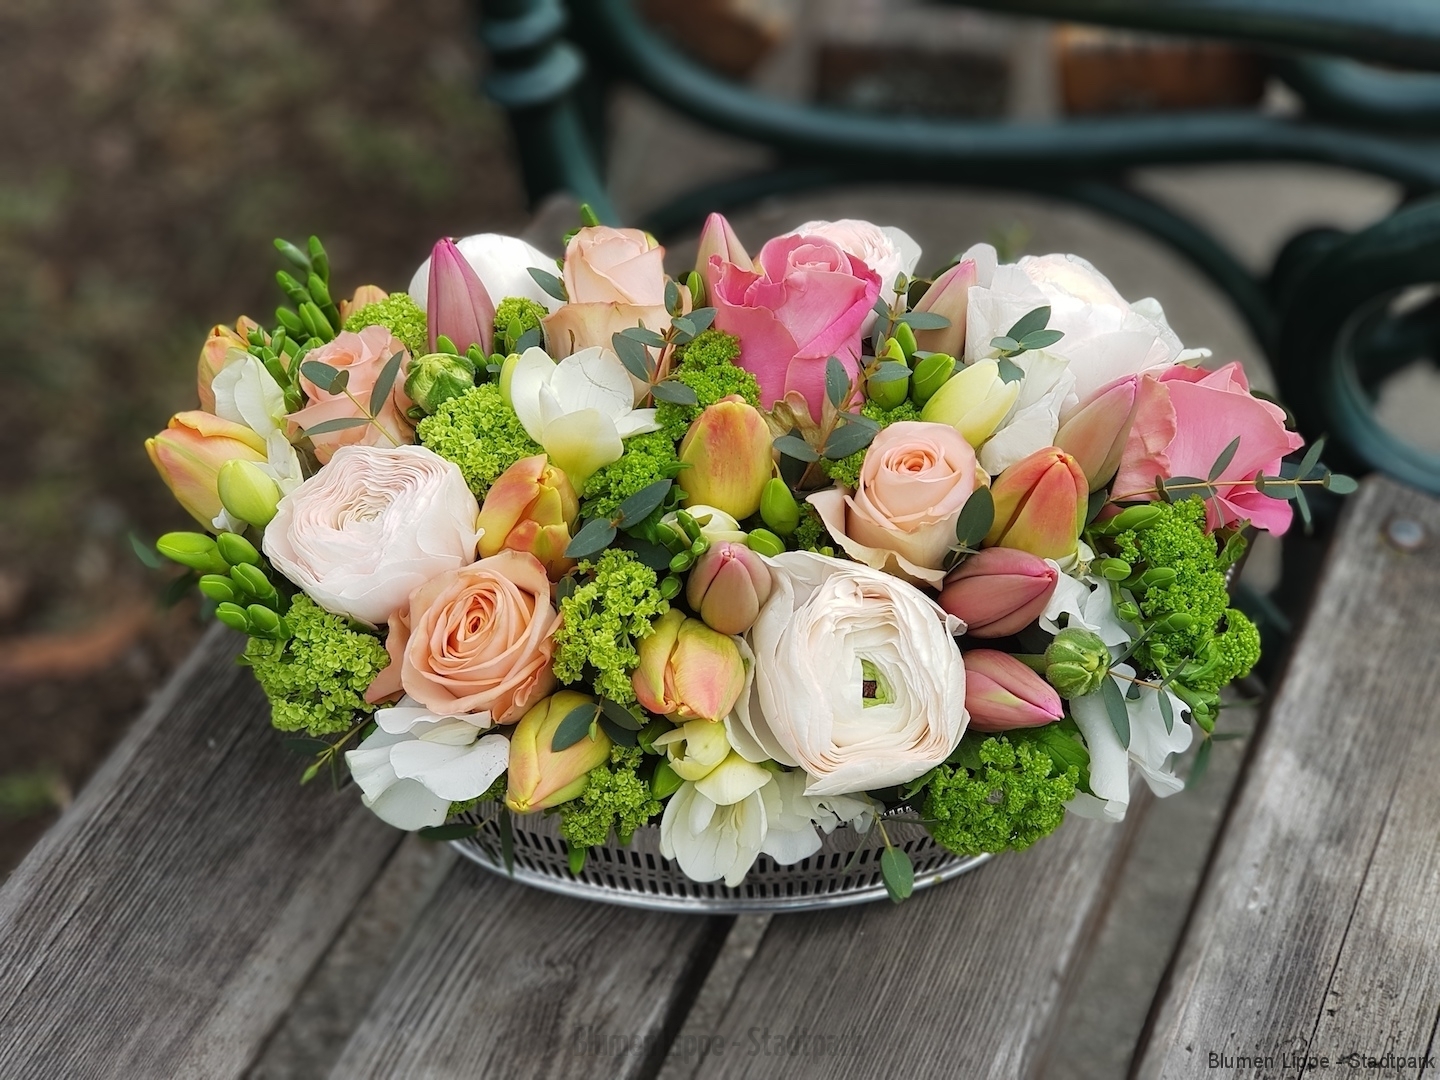 Blumengesteck(floral arrangement) #1 -Verfügbarkeit anfragen (request availability)